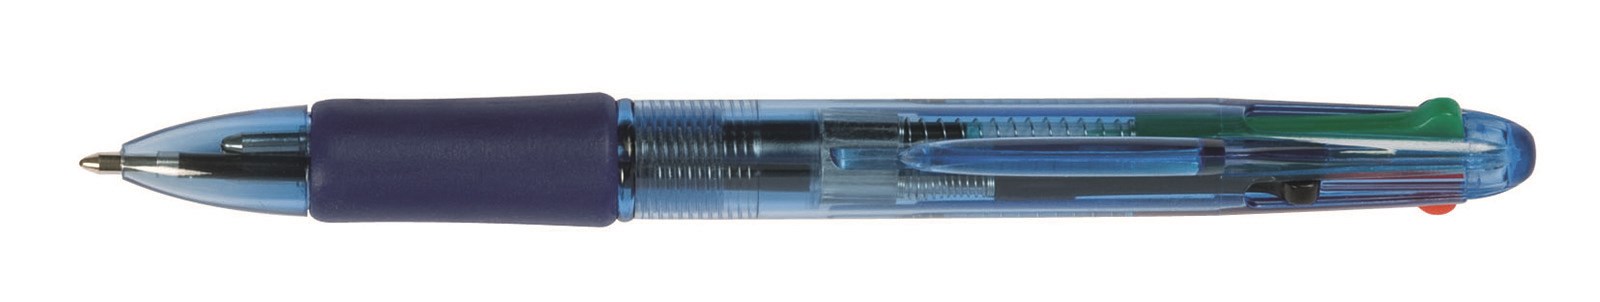 Długopis automatyczny Q-CONNECT 4-color 0,7mm (linia), mix kolorów